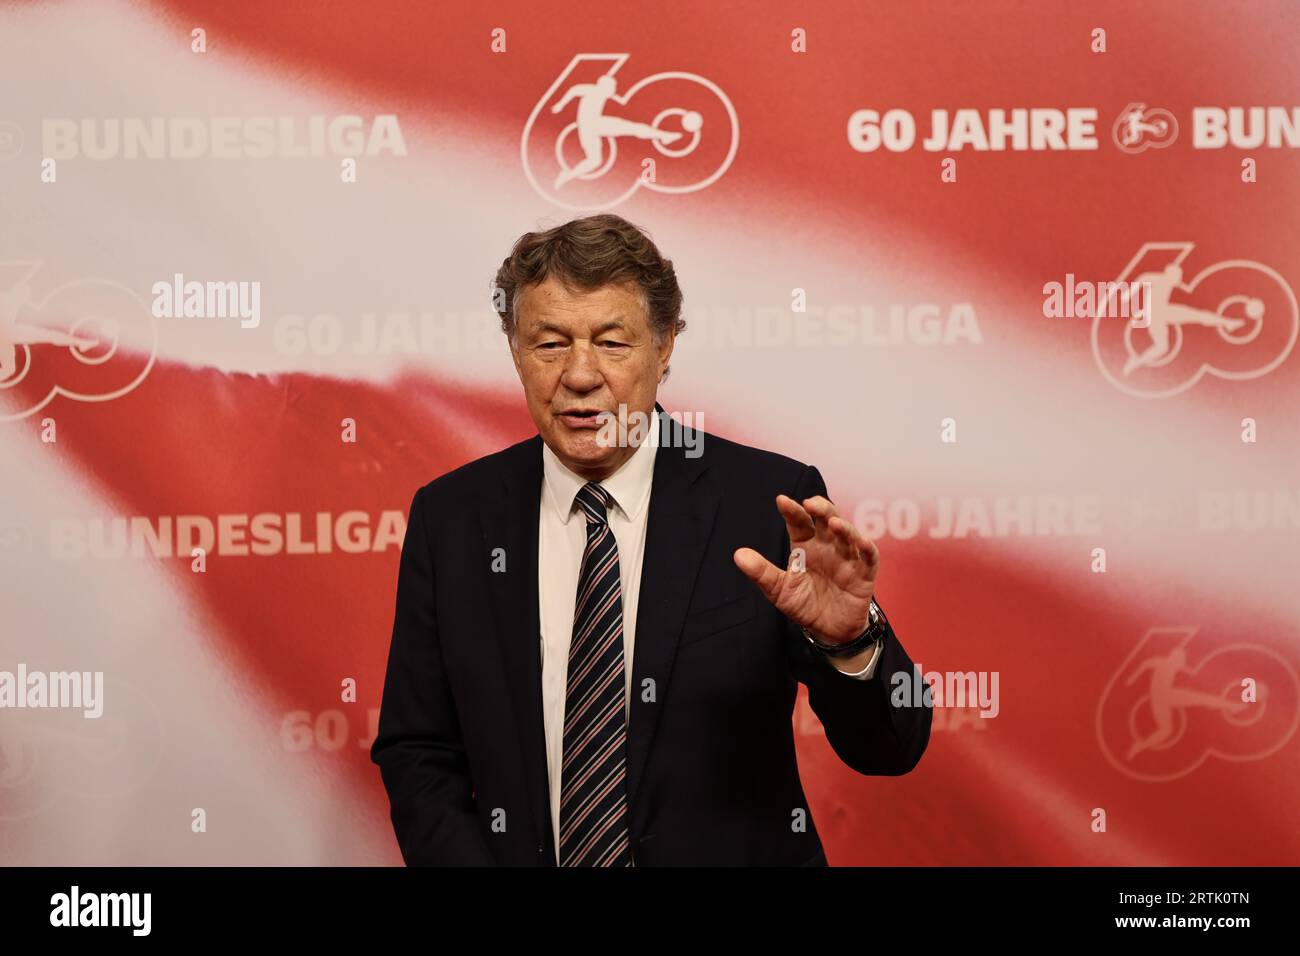 Berlino, Germania, 13 settembre 2023, il Master trainer otto Rehhagel partecipa al gala "60 anni della Bundesliga" al Tempodrom. Sven Sstruck/Alamy Live News Foto Stock